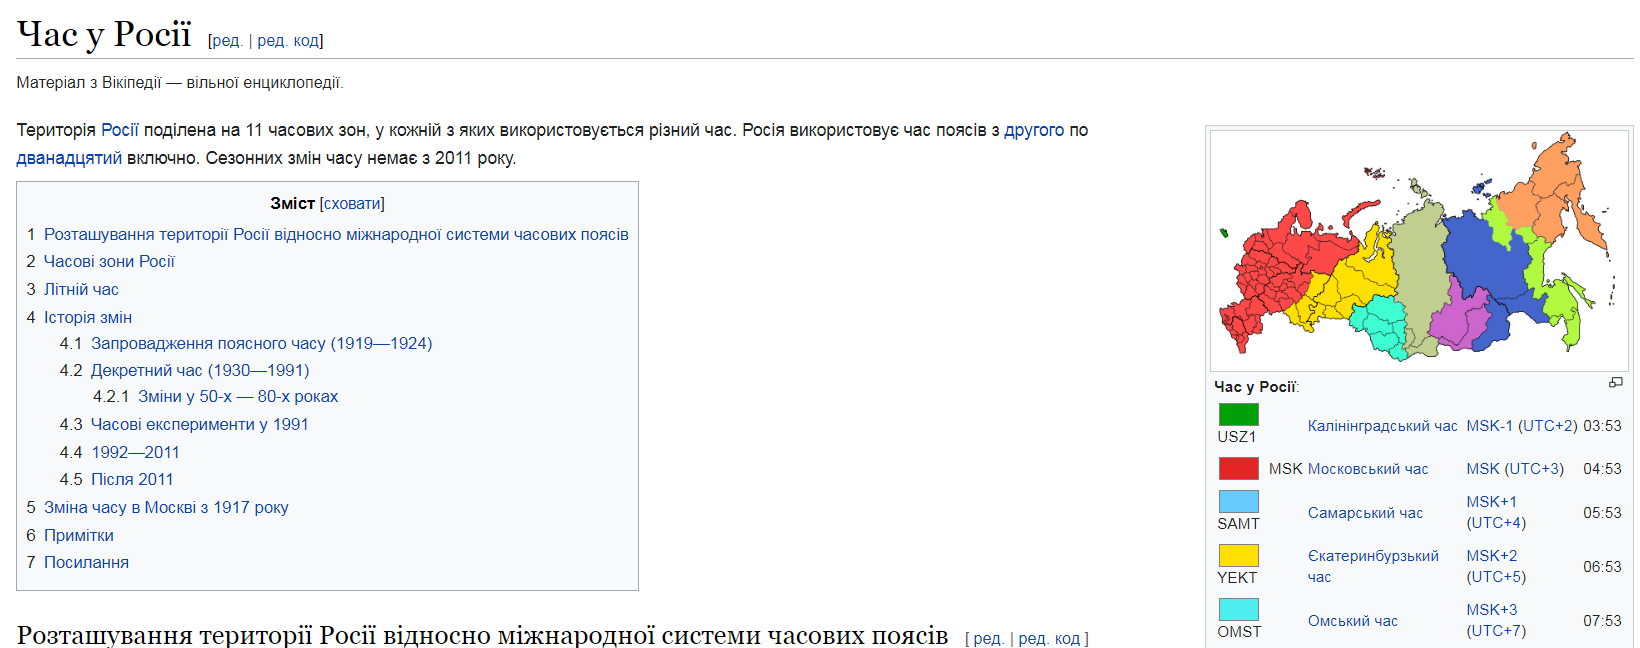 Скриншот из Википедии с картой России